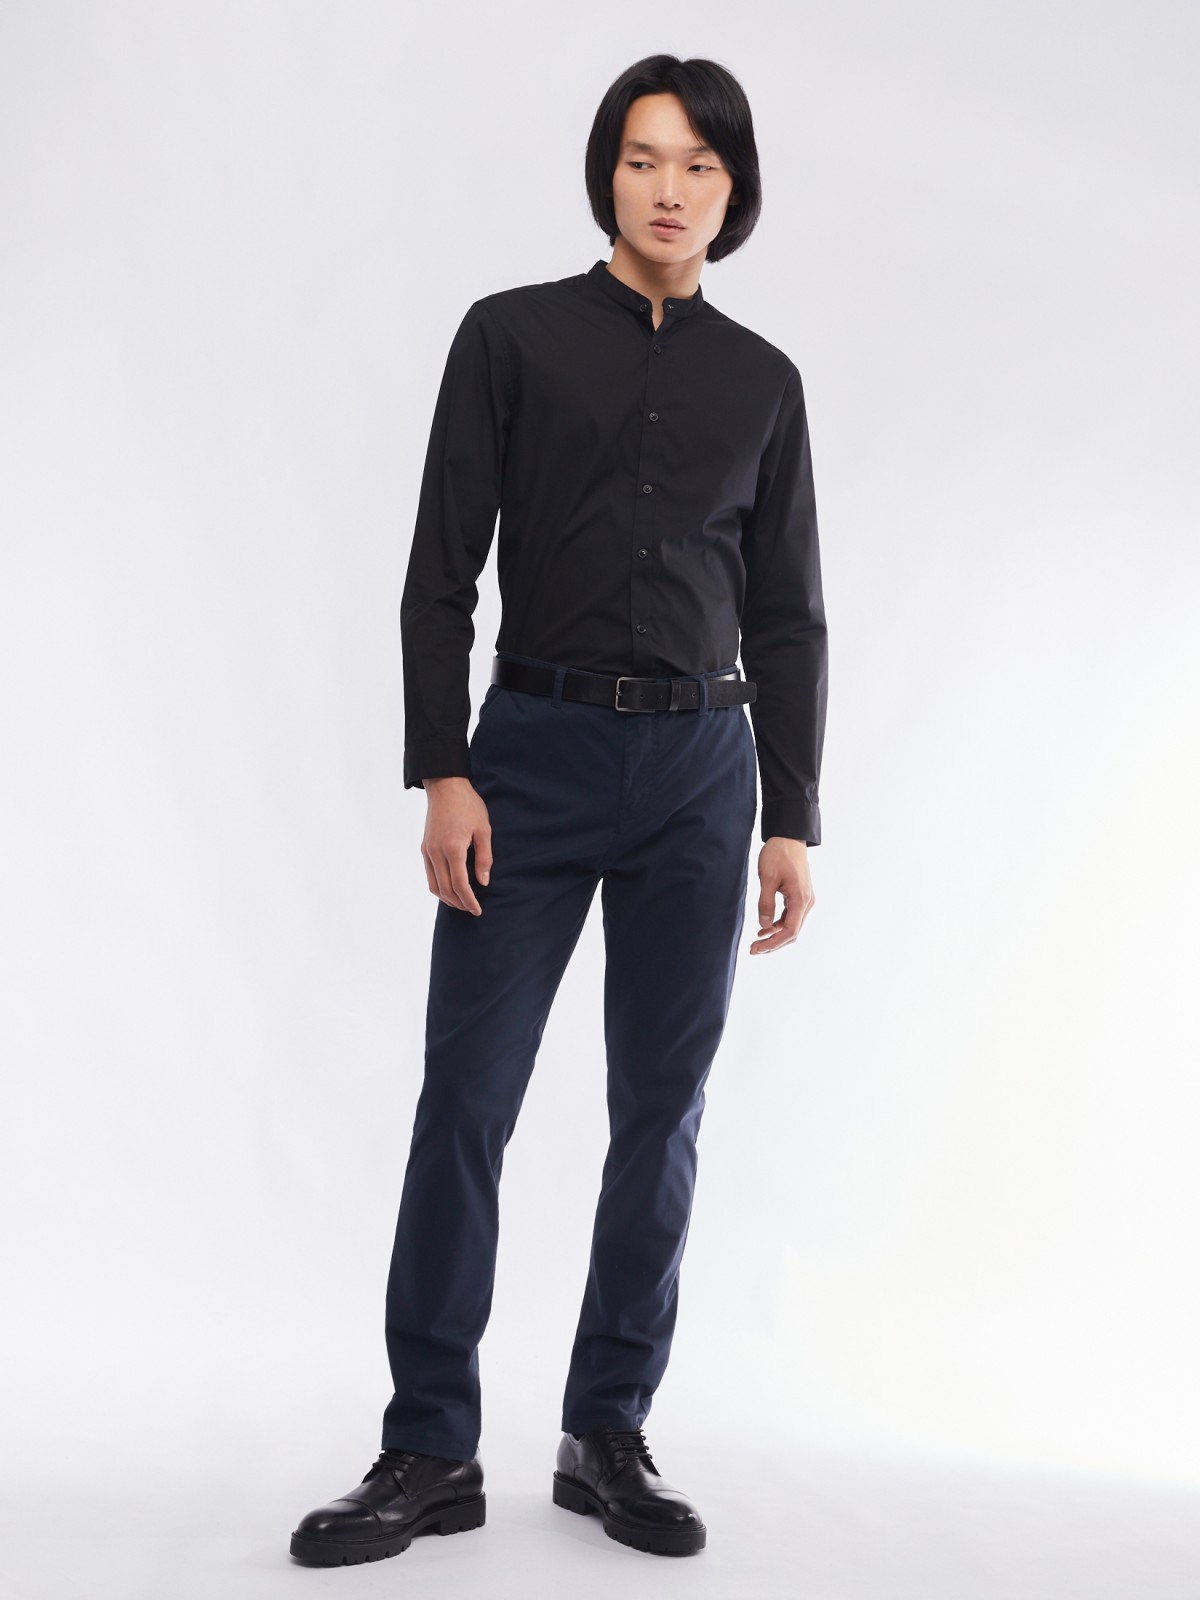 Офисная рубашка с воротником-стойкой и длинным рукавом zolla 01411217W072, цвет черный, размер S - фото 2